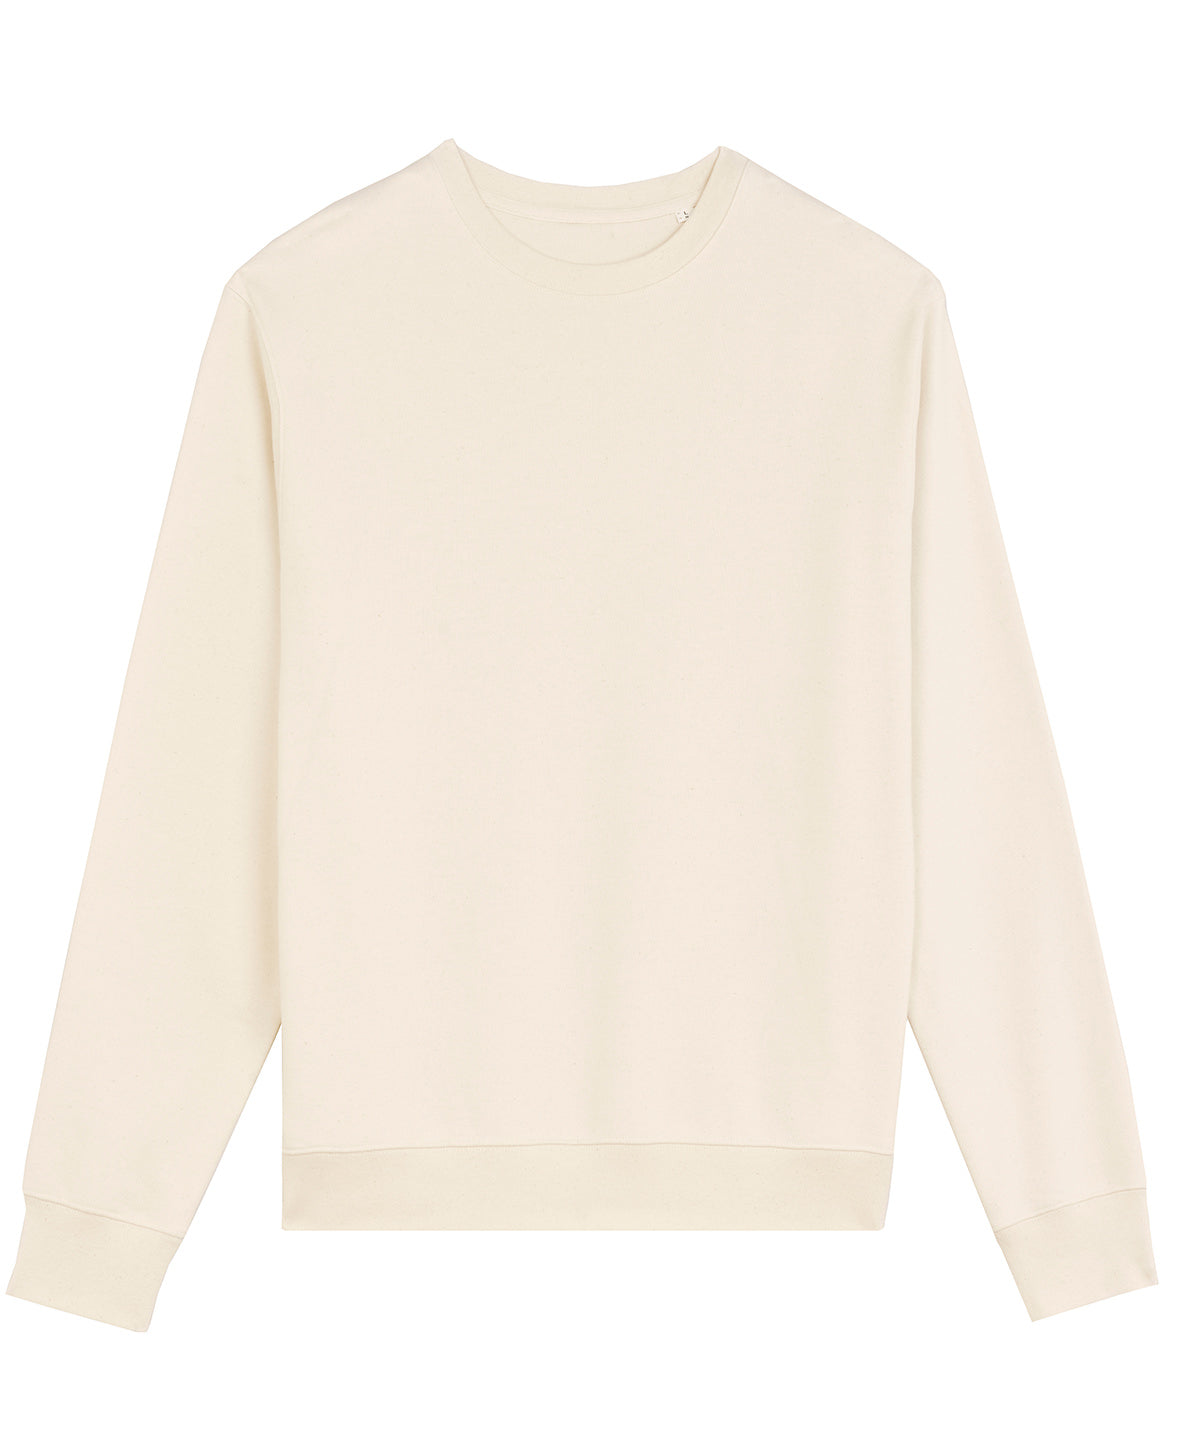 Háskólapeysur - Unisex Matcher Sweatshirt (STSU799)